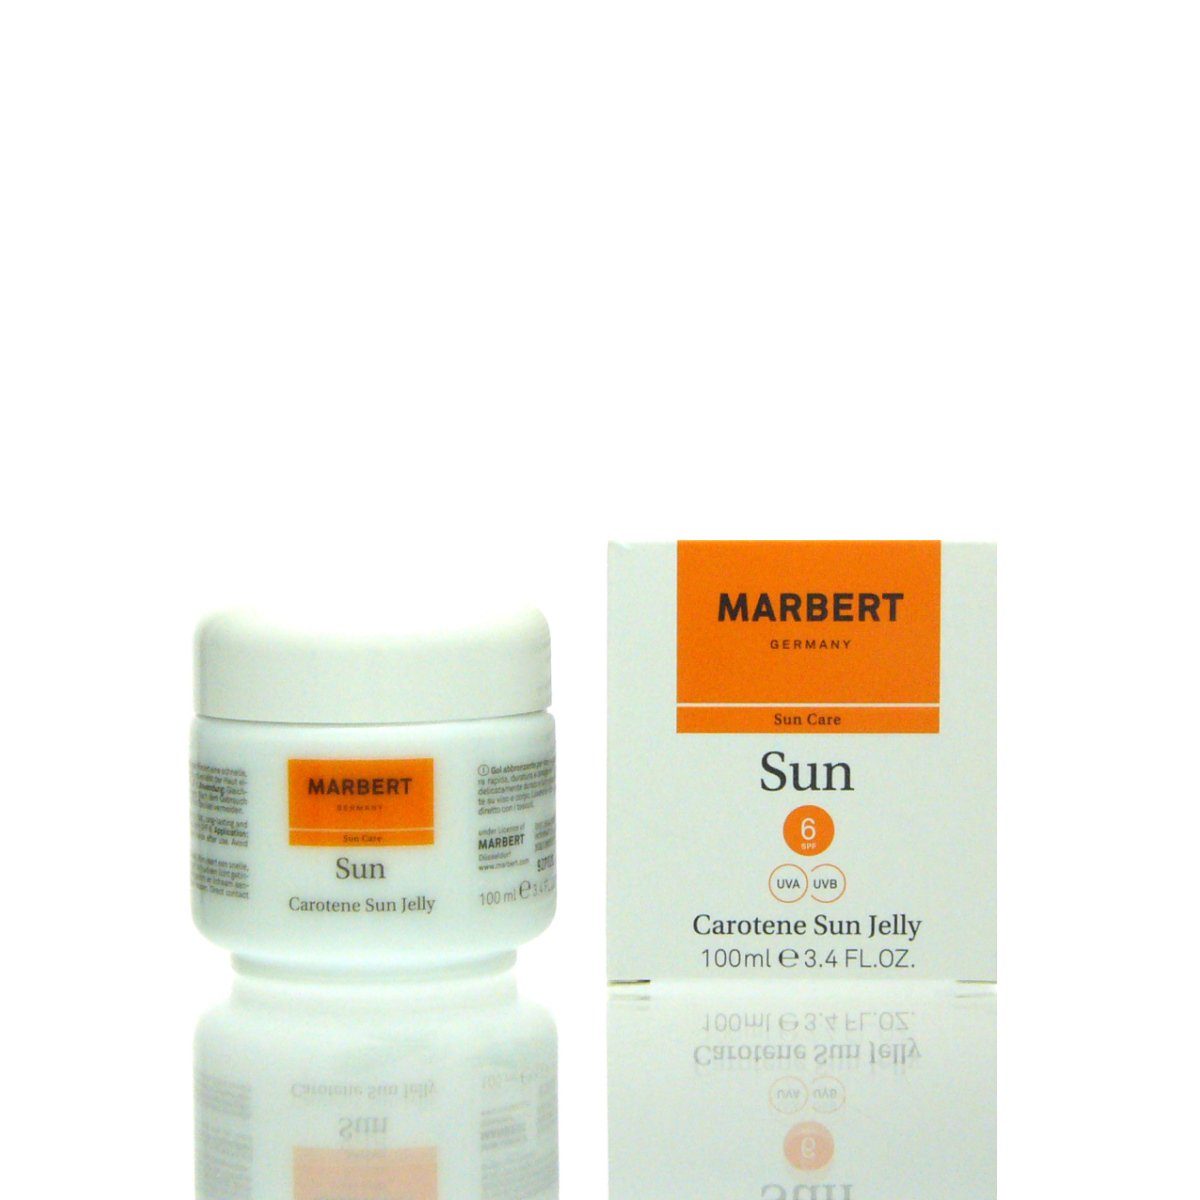 Marbert Make-up Marbert Sun Sun ml 100 6 SPF Jelly Carotene